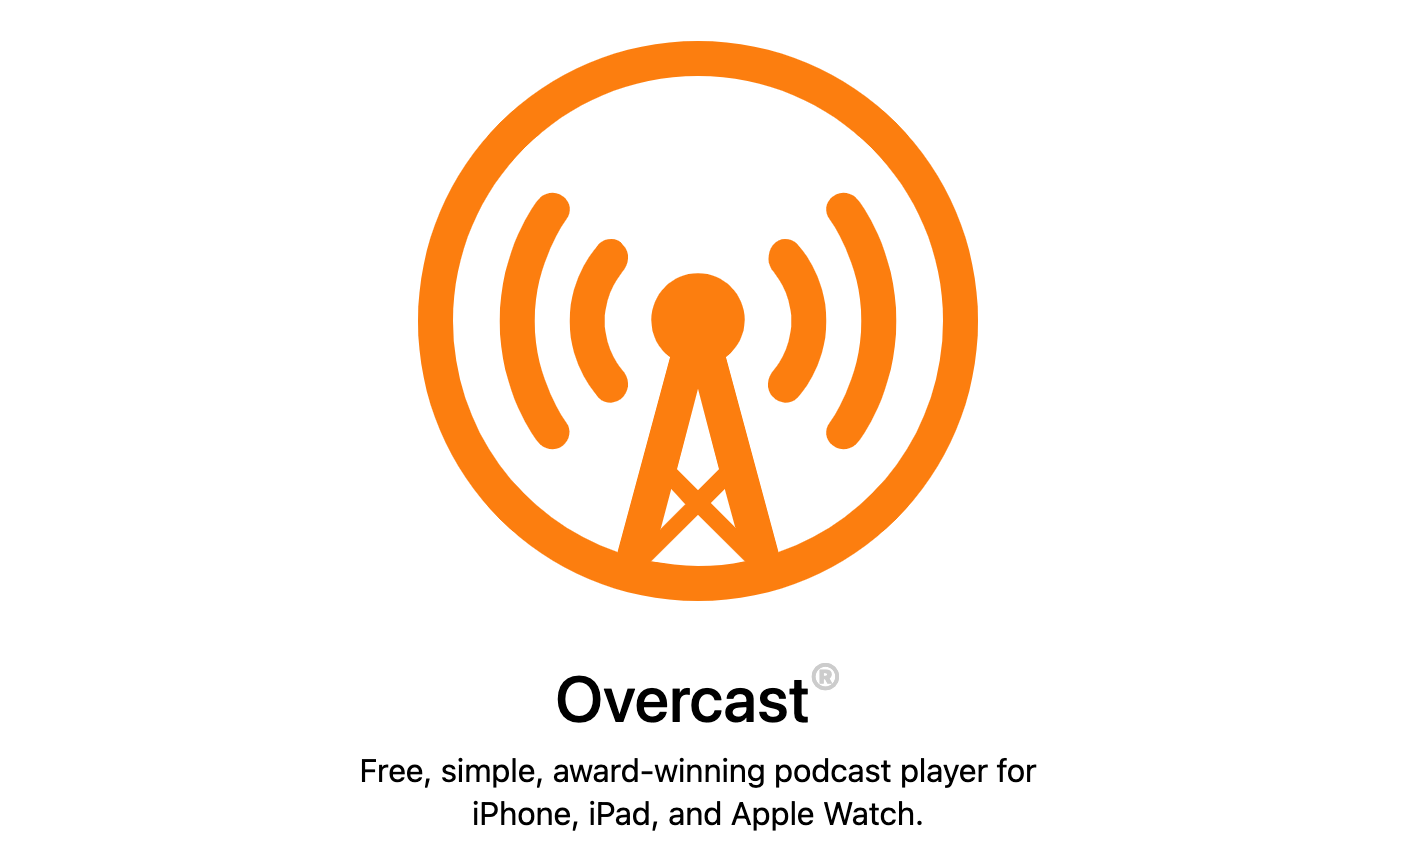 Overcast’s logo